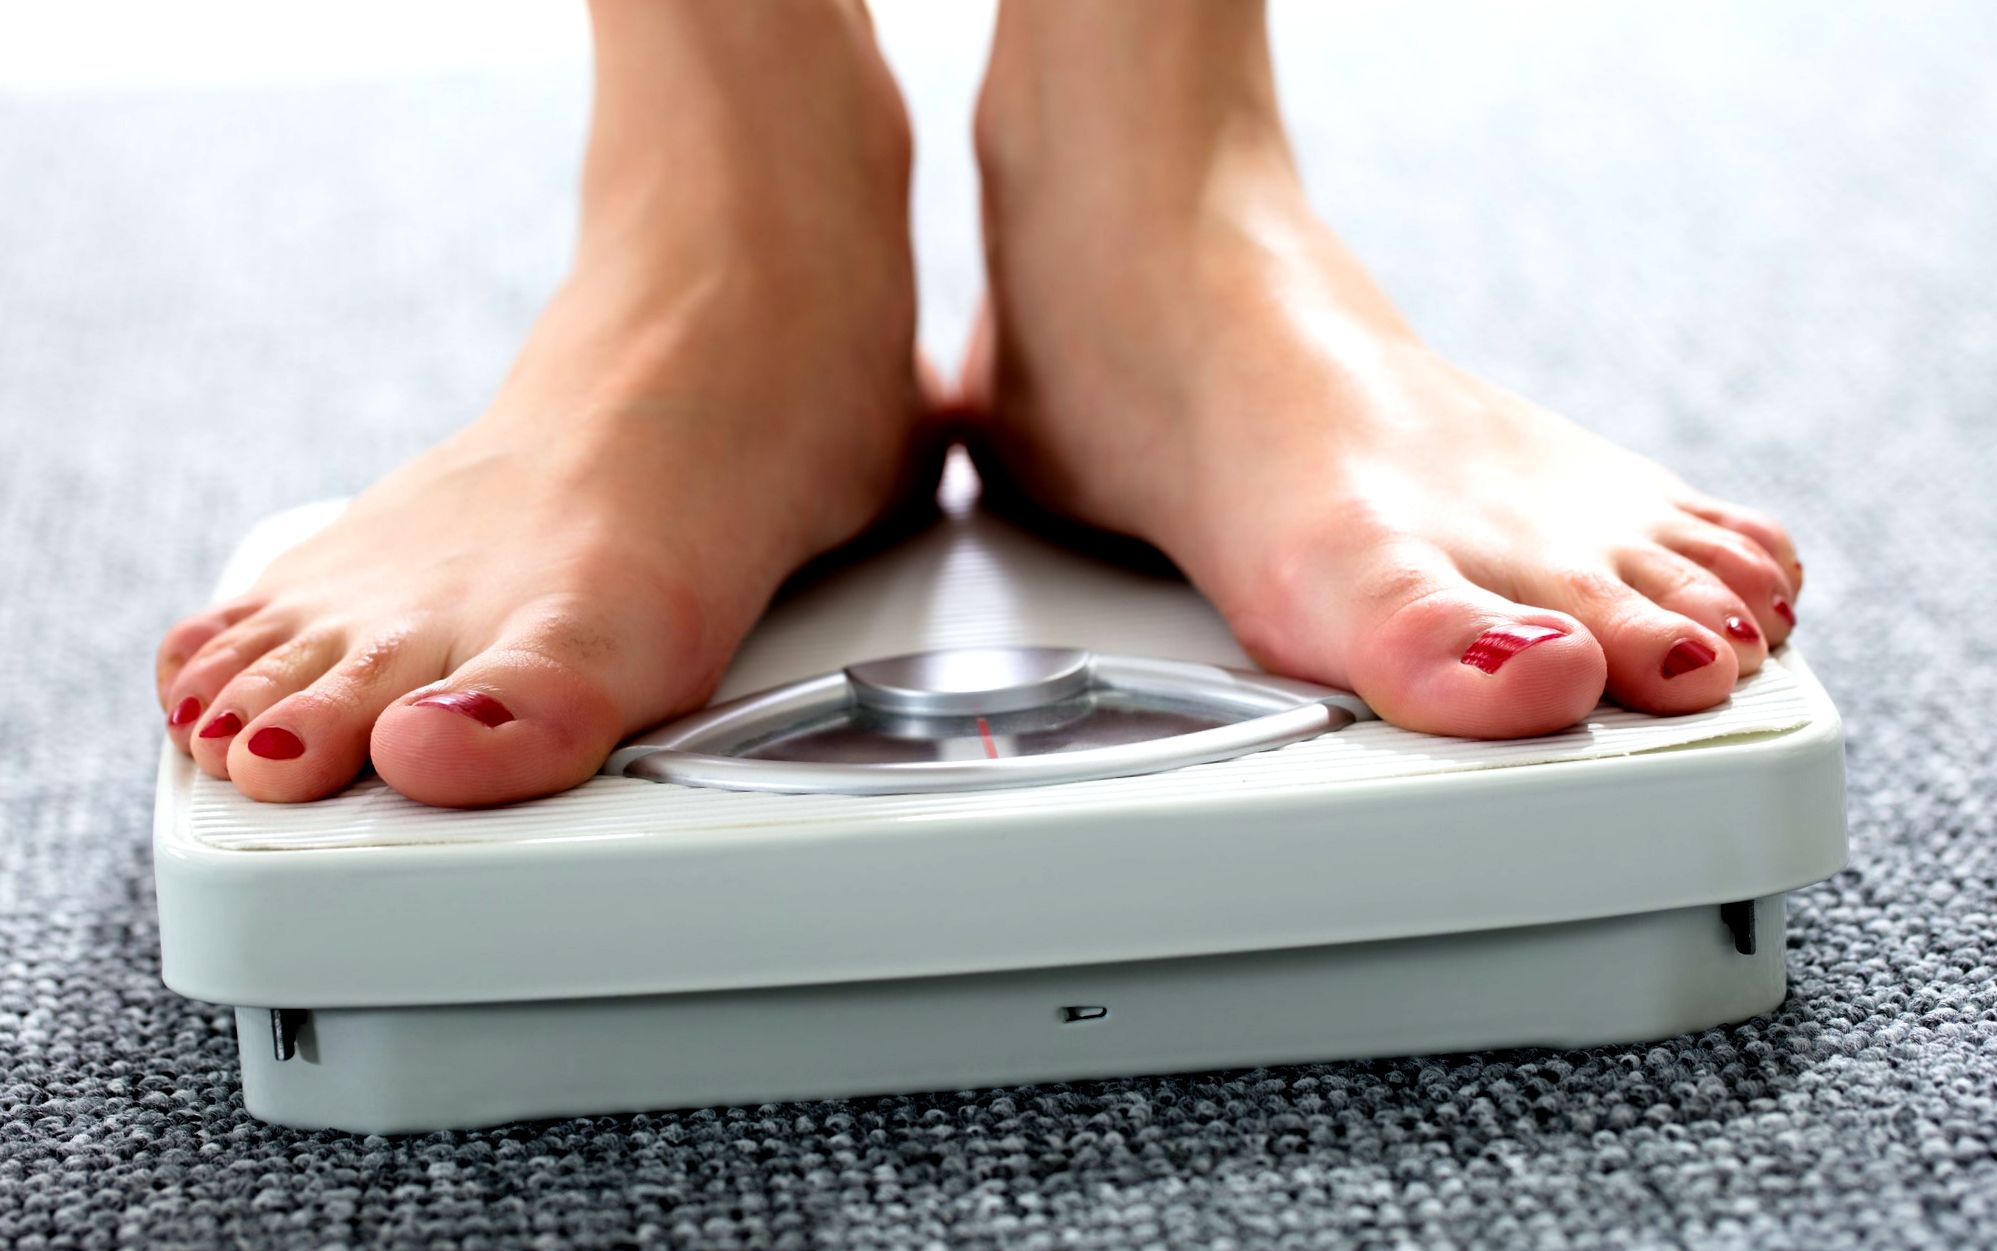 Hirtelen súlycsökkenés ok nélkül – Mi állhat a háttérben? | Diéta és Fitnesz